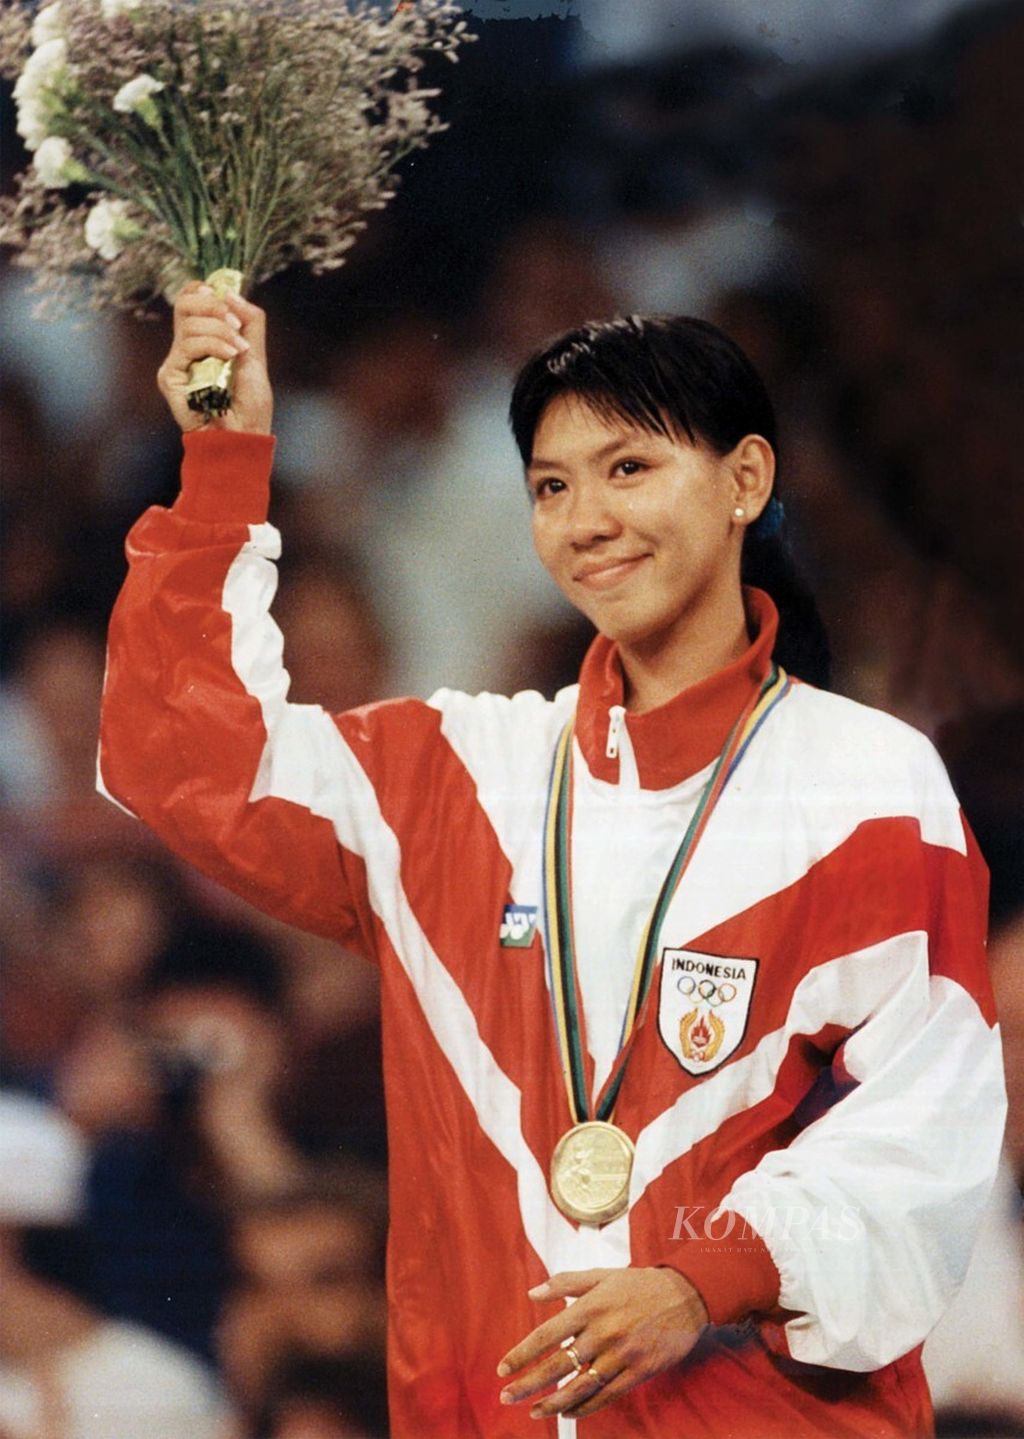 Atlet bulu tangkis Indonesia saat menjuarai Olimpiade Barcelona 1992